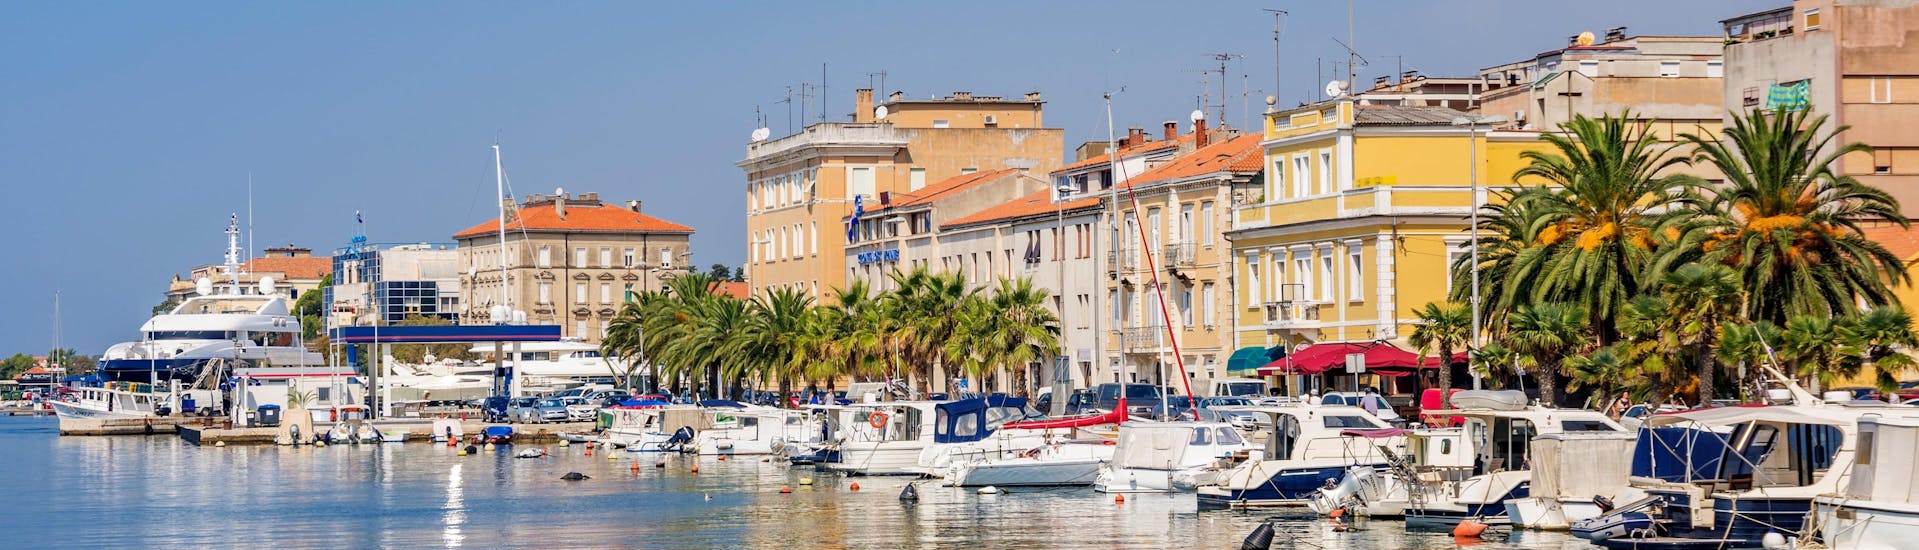 Un groupe d'amis fait une excursion en bateau dans la superbe destination Zadar.